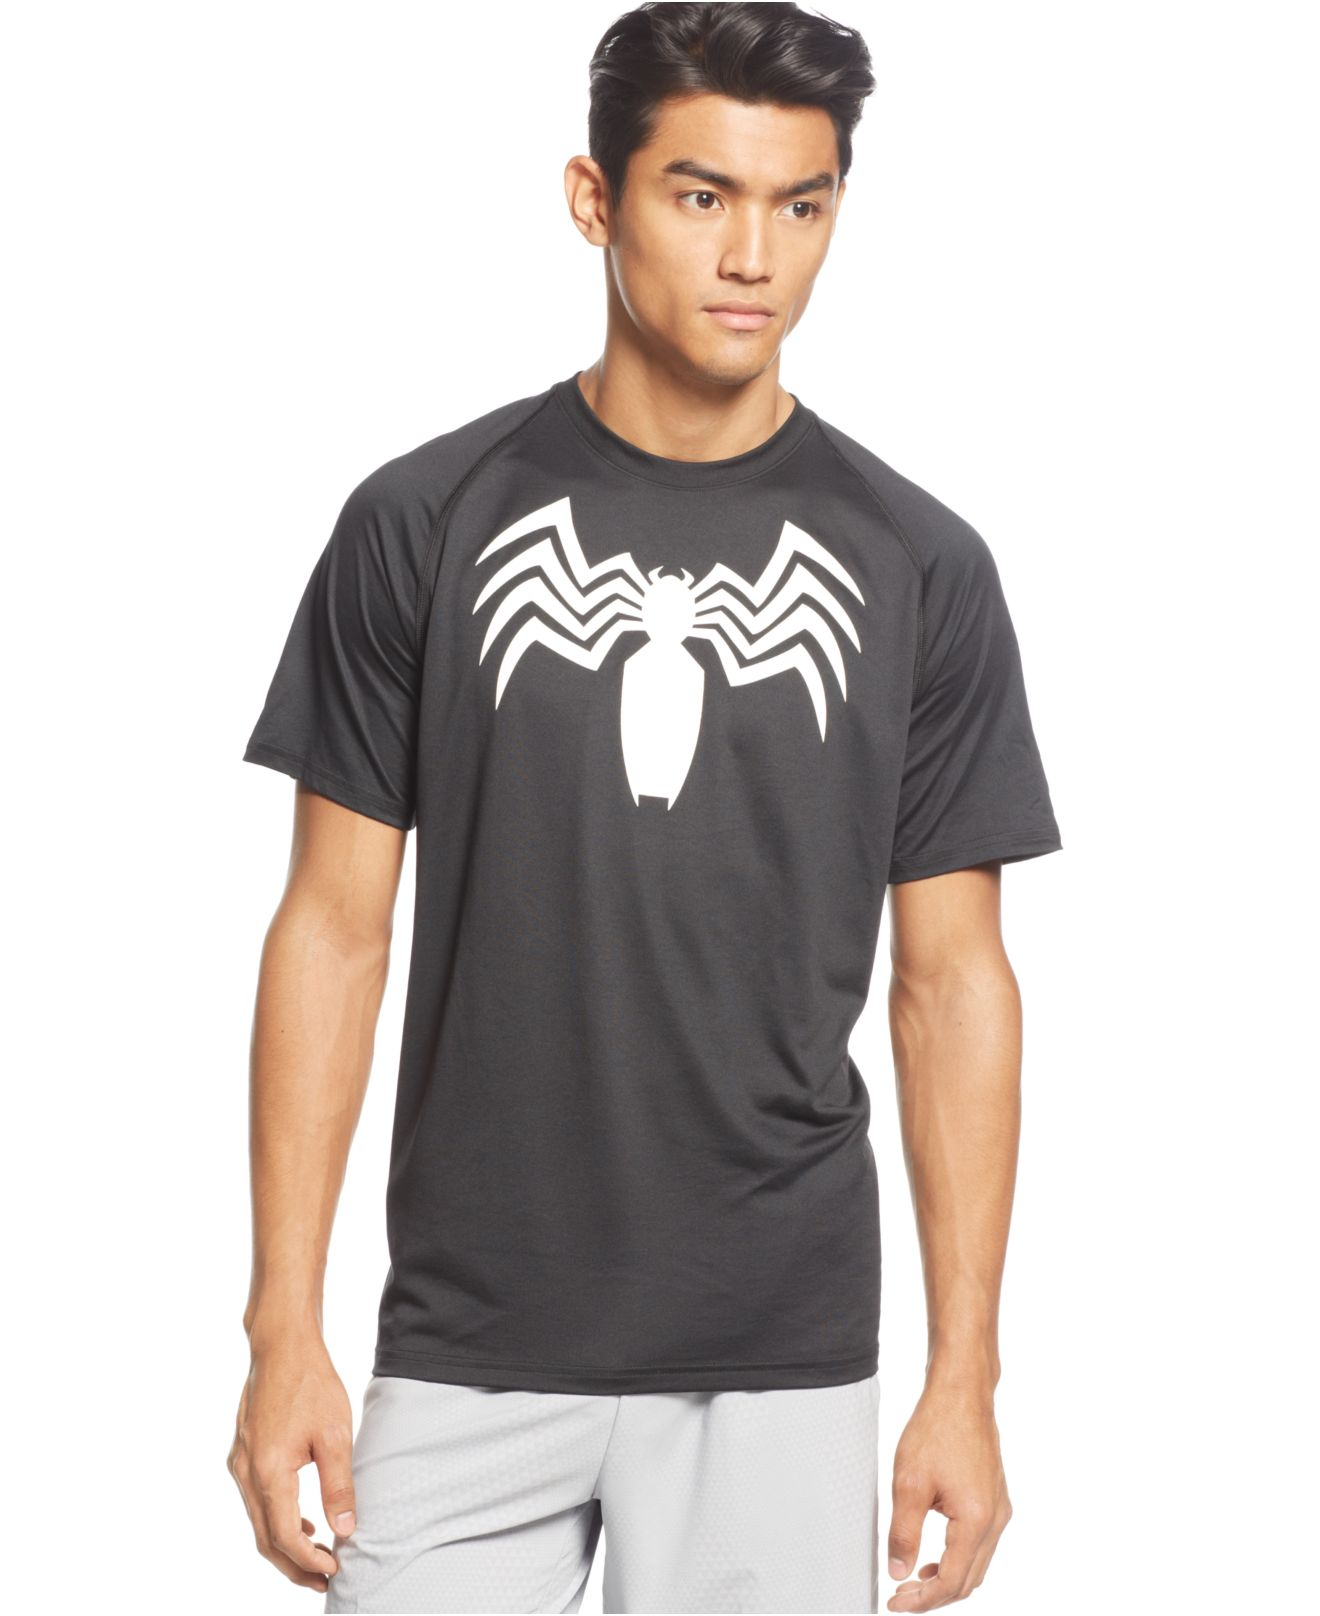 Venom T Shirt Under Armour Online, SAVE 33% - querotec.com